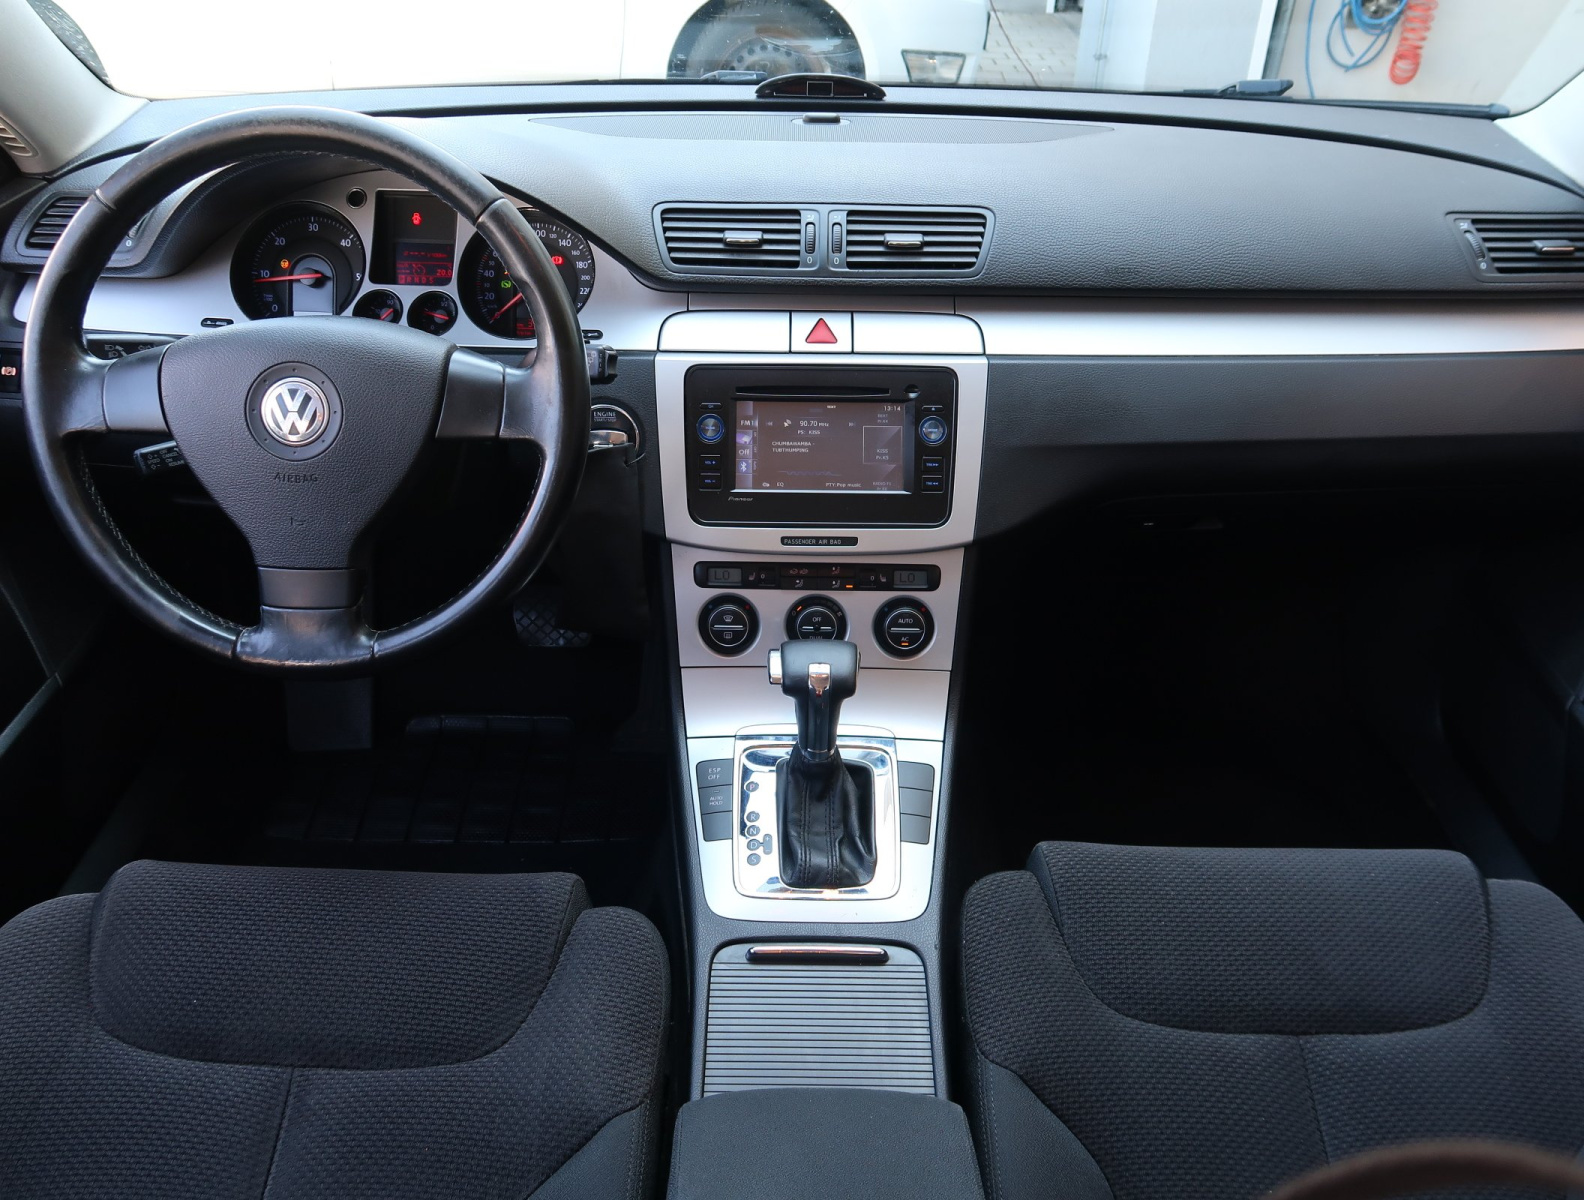 Volkswagen Passat, 2008, 2.0 TDI, 125kW